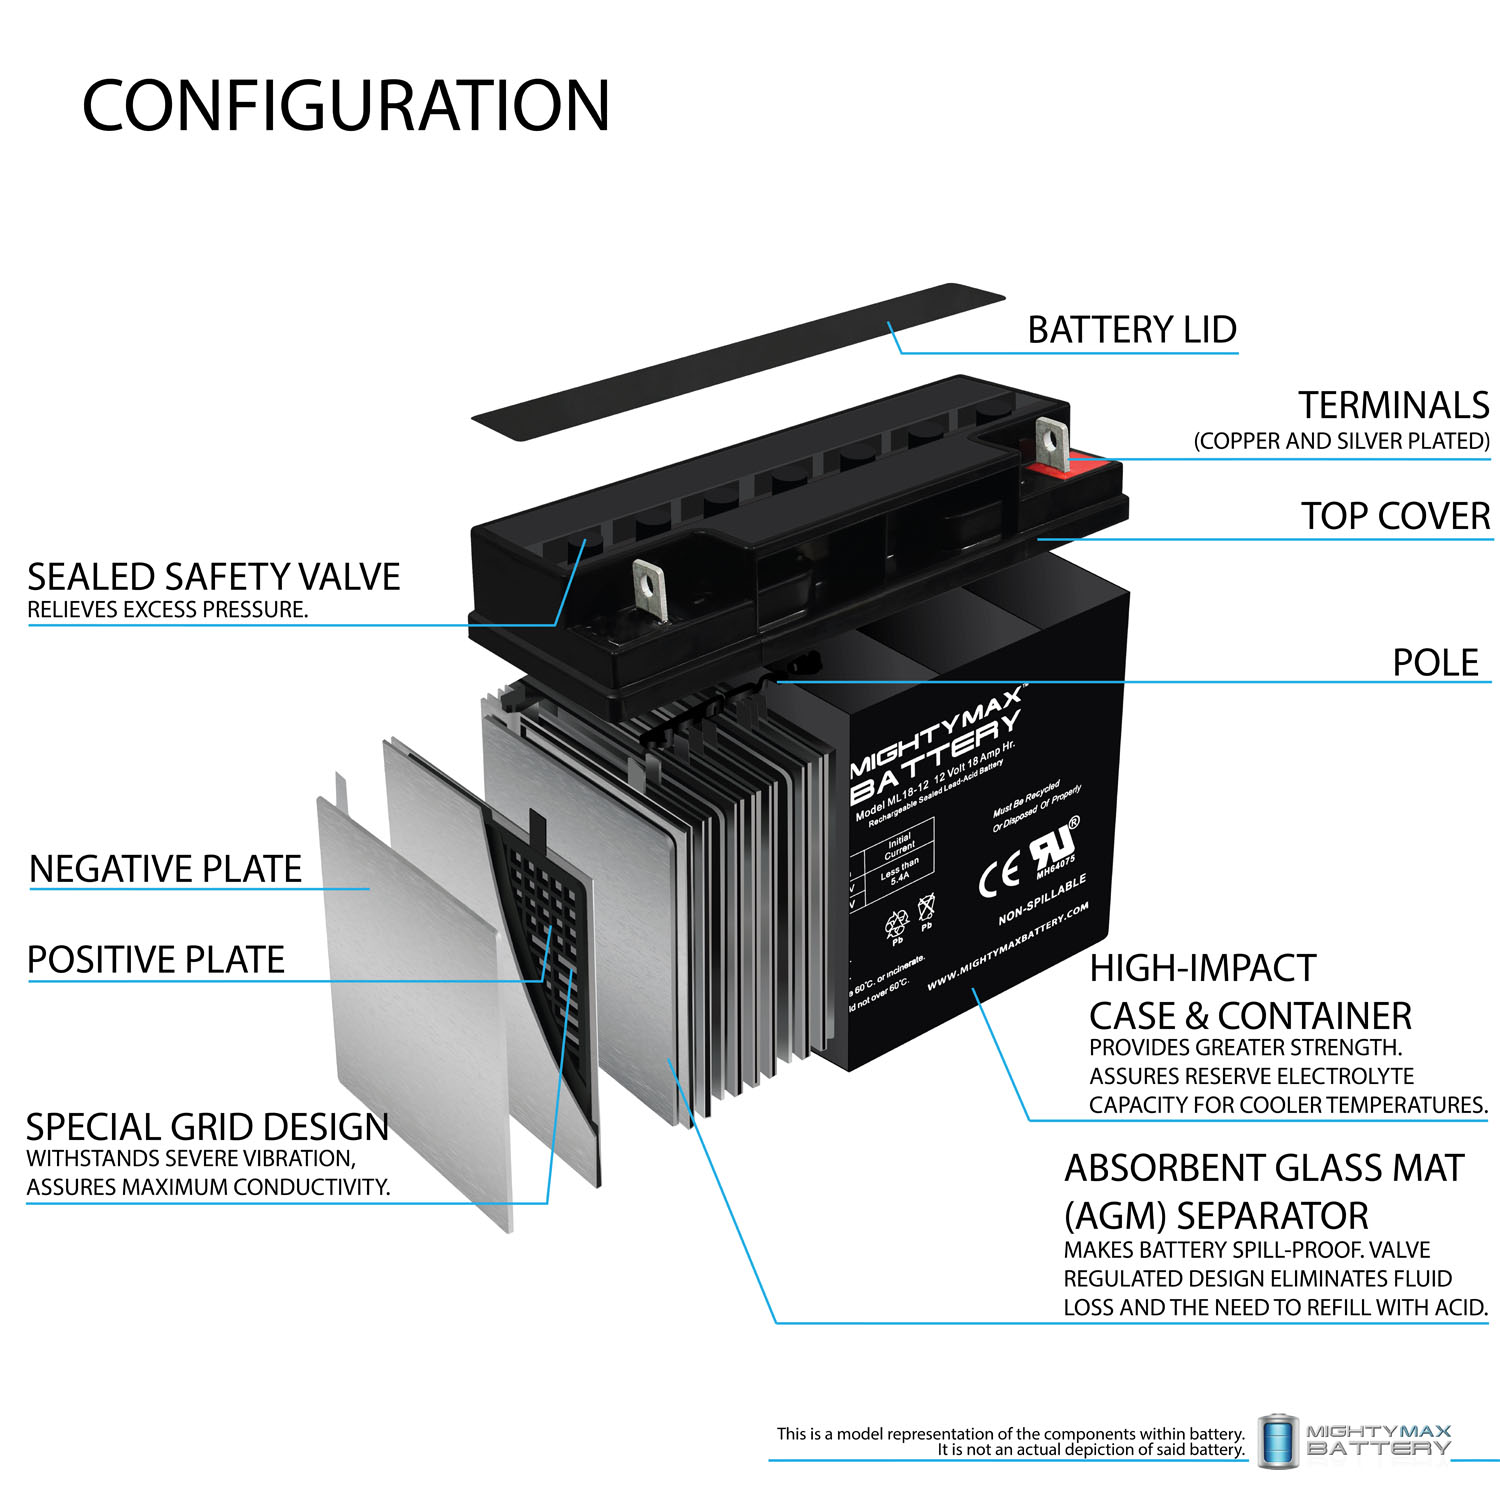 Imprimante de reçus Bluetooth mini portable avec batterie rechargeable